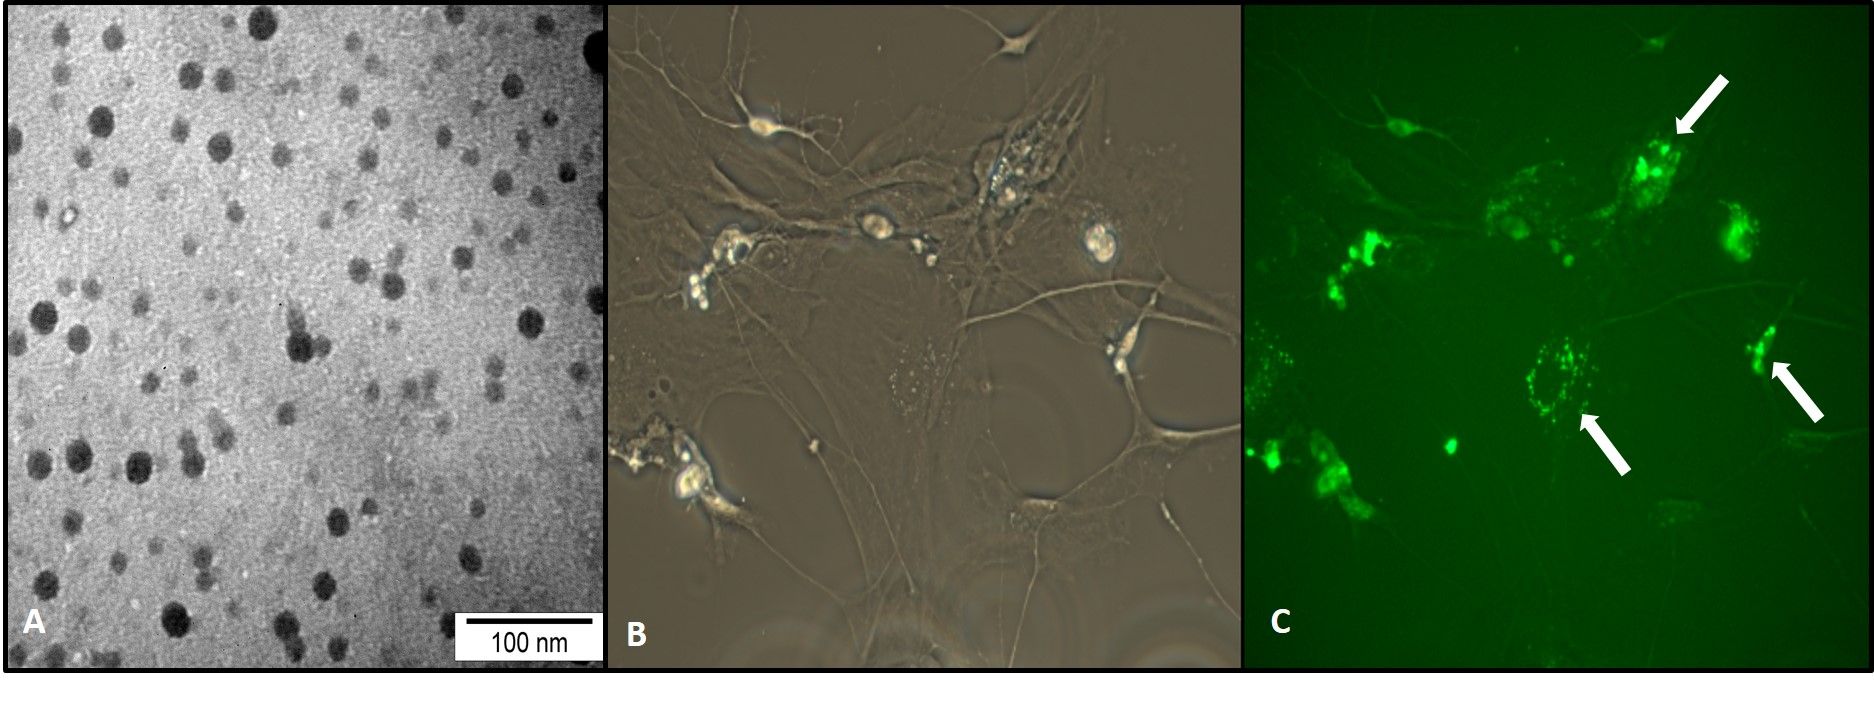 Ryc.  A) Używane w badaniach nanocząstki polistyrenu (PS-NPs) o wielkości 25 nm – obraz w mikroskopie elektronowym. Fot. Ryszard Strzałkowski; B) pierwotna hodowla komórkowa astrocytów szczurzych. Fot. Kamil Adamiak; C) astrocyty poddane ekspozycji na PS-NPs – we wnętrzu cytoplazmy komórek widoczna zielona fluorescencja pochodząca od agregatów nanocząstek znakowanych fluorochromem. Strzałki wskazują skupiska nanocząstek w postaci drobnych punktów. Obraz w mikroskopie fluorescencyjnym. Fot. Kamil Adamiak